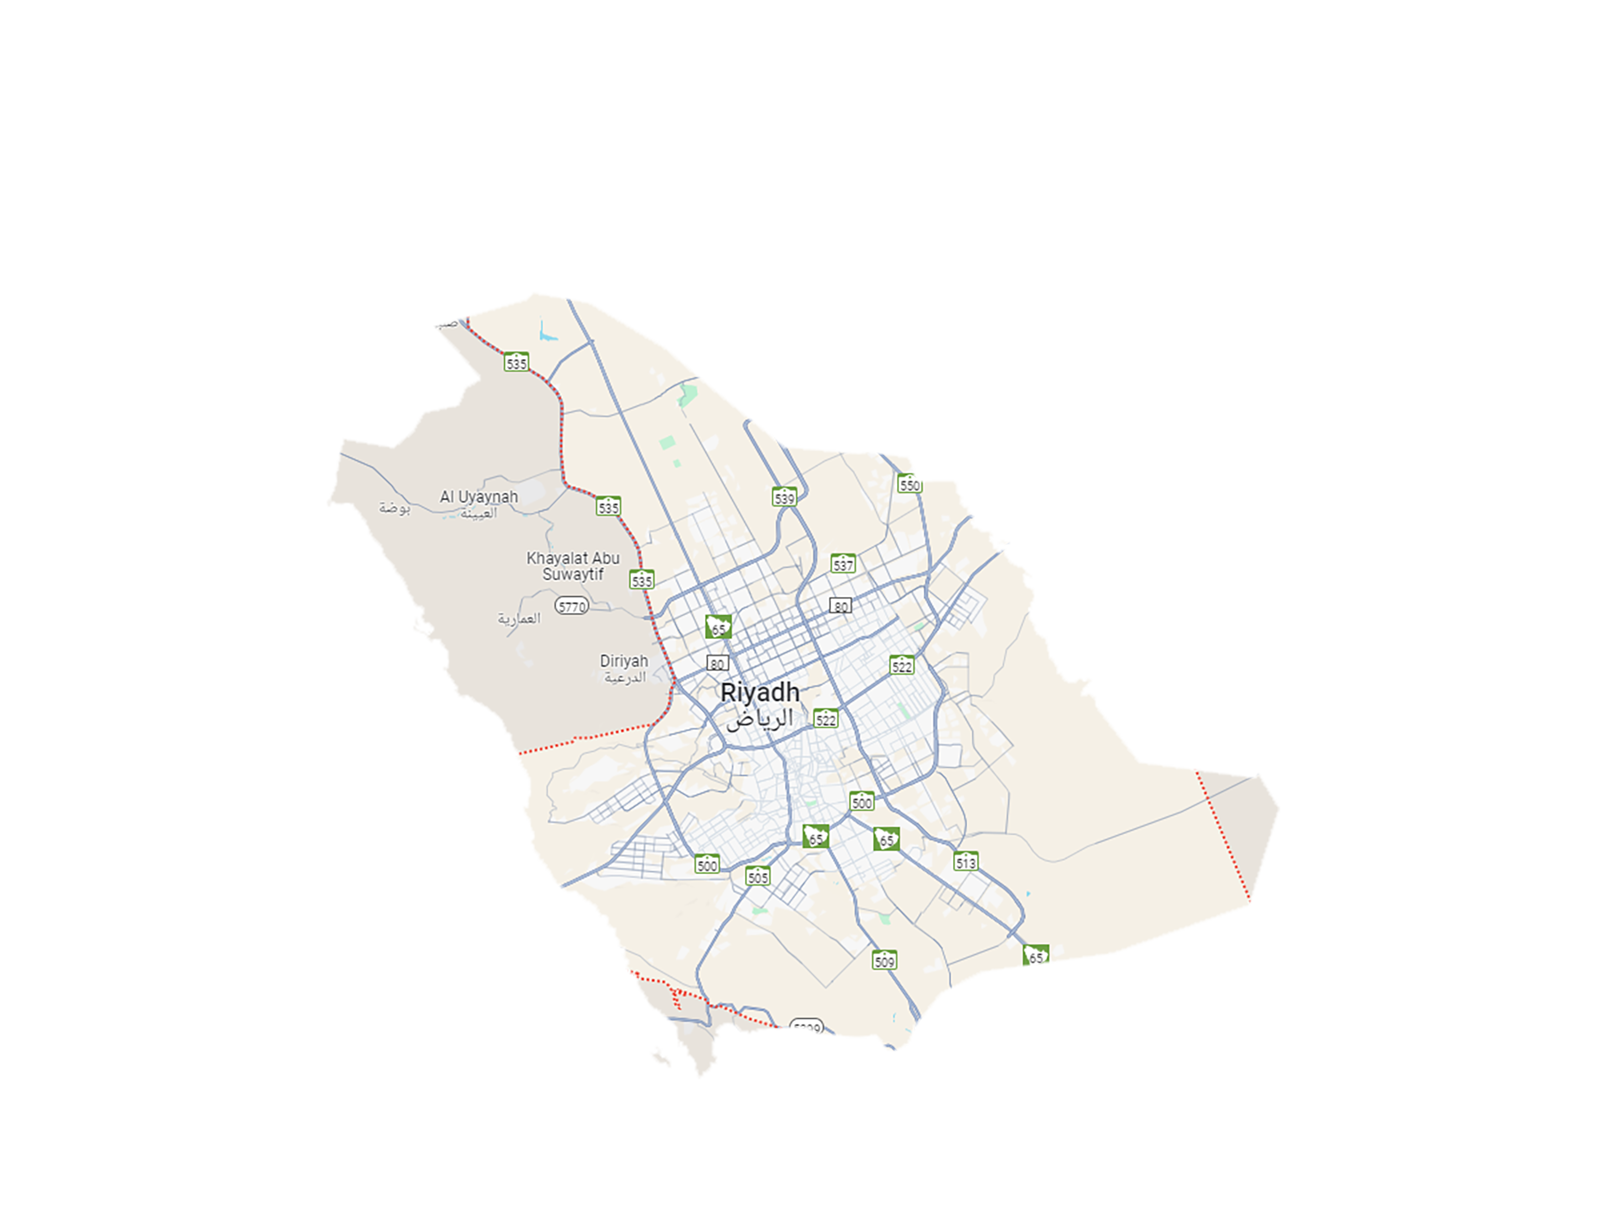 Location Image